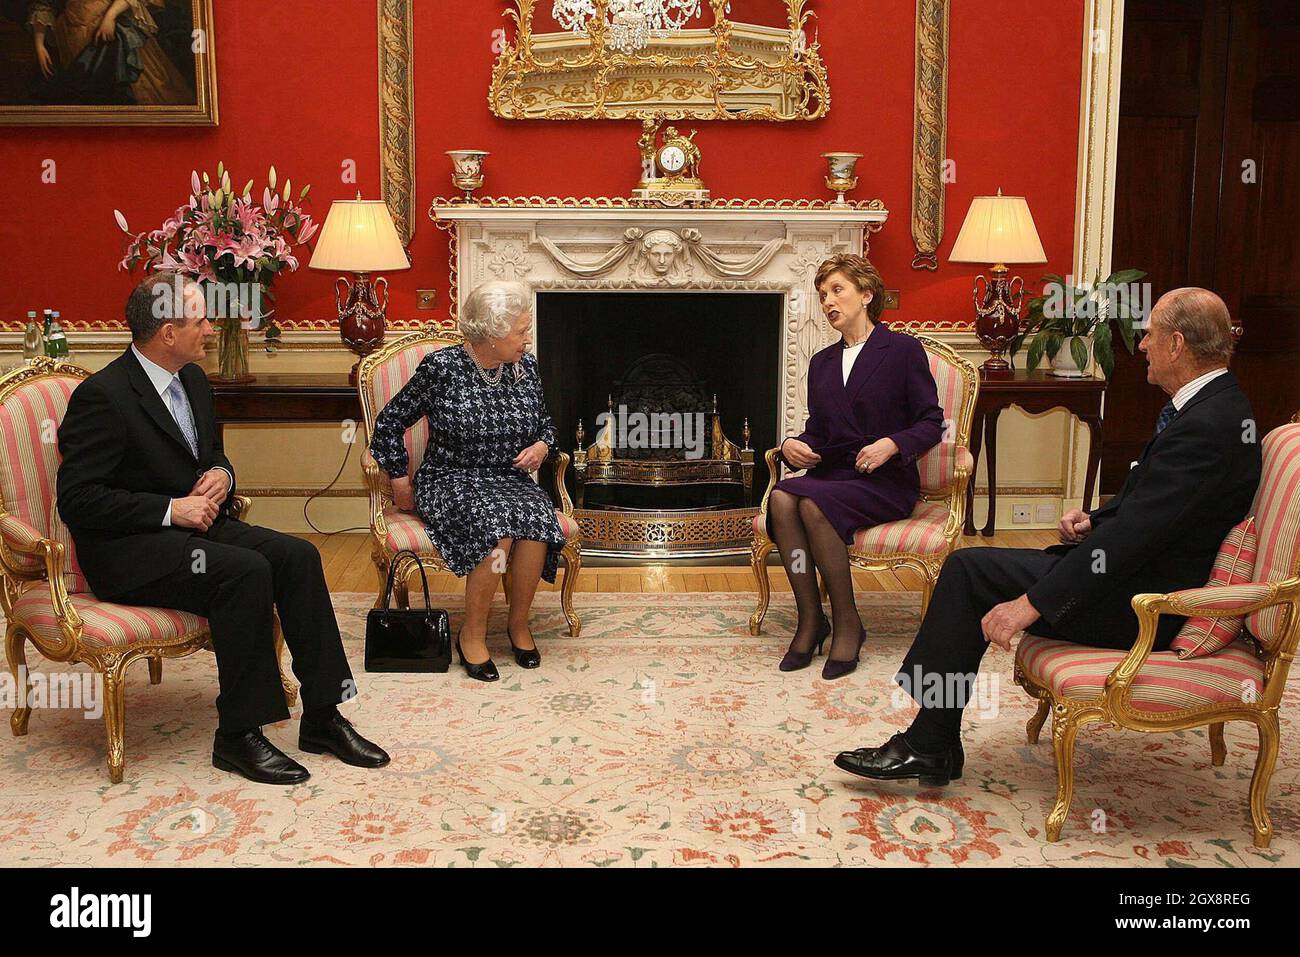 La reina Isabel II y el príncipe Felipe, duque de Edimburgo se reúnen con la presidenta irlandesa Mary McAleese y su marido el Dr. Martin McAleese en el Castillo de Hillsborough, Belfast. Es la primera visita de la Reina a Irlanda del Norte desde febrero de 2003. Anwar Hussein/allactiondigital.com Foto de stock